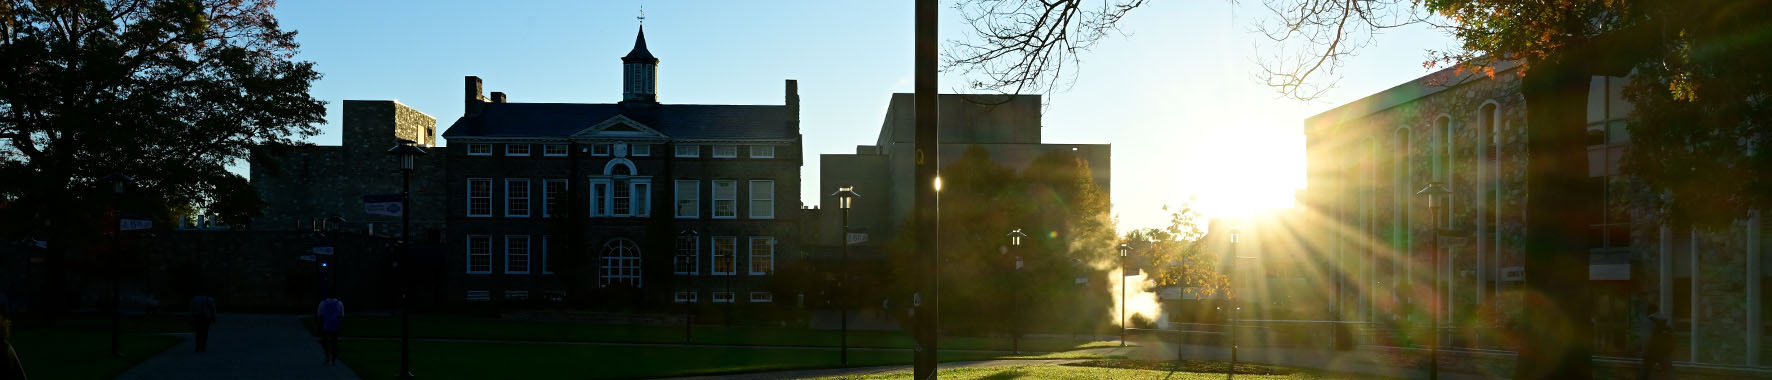 academic quad at sunrise